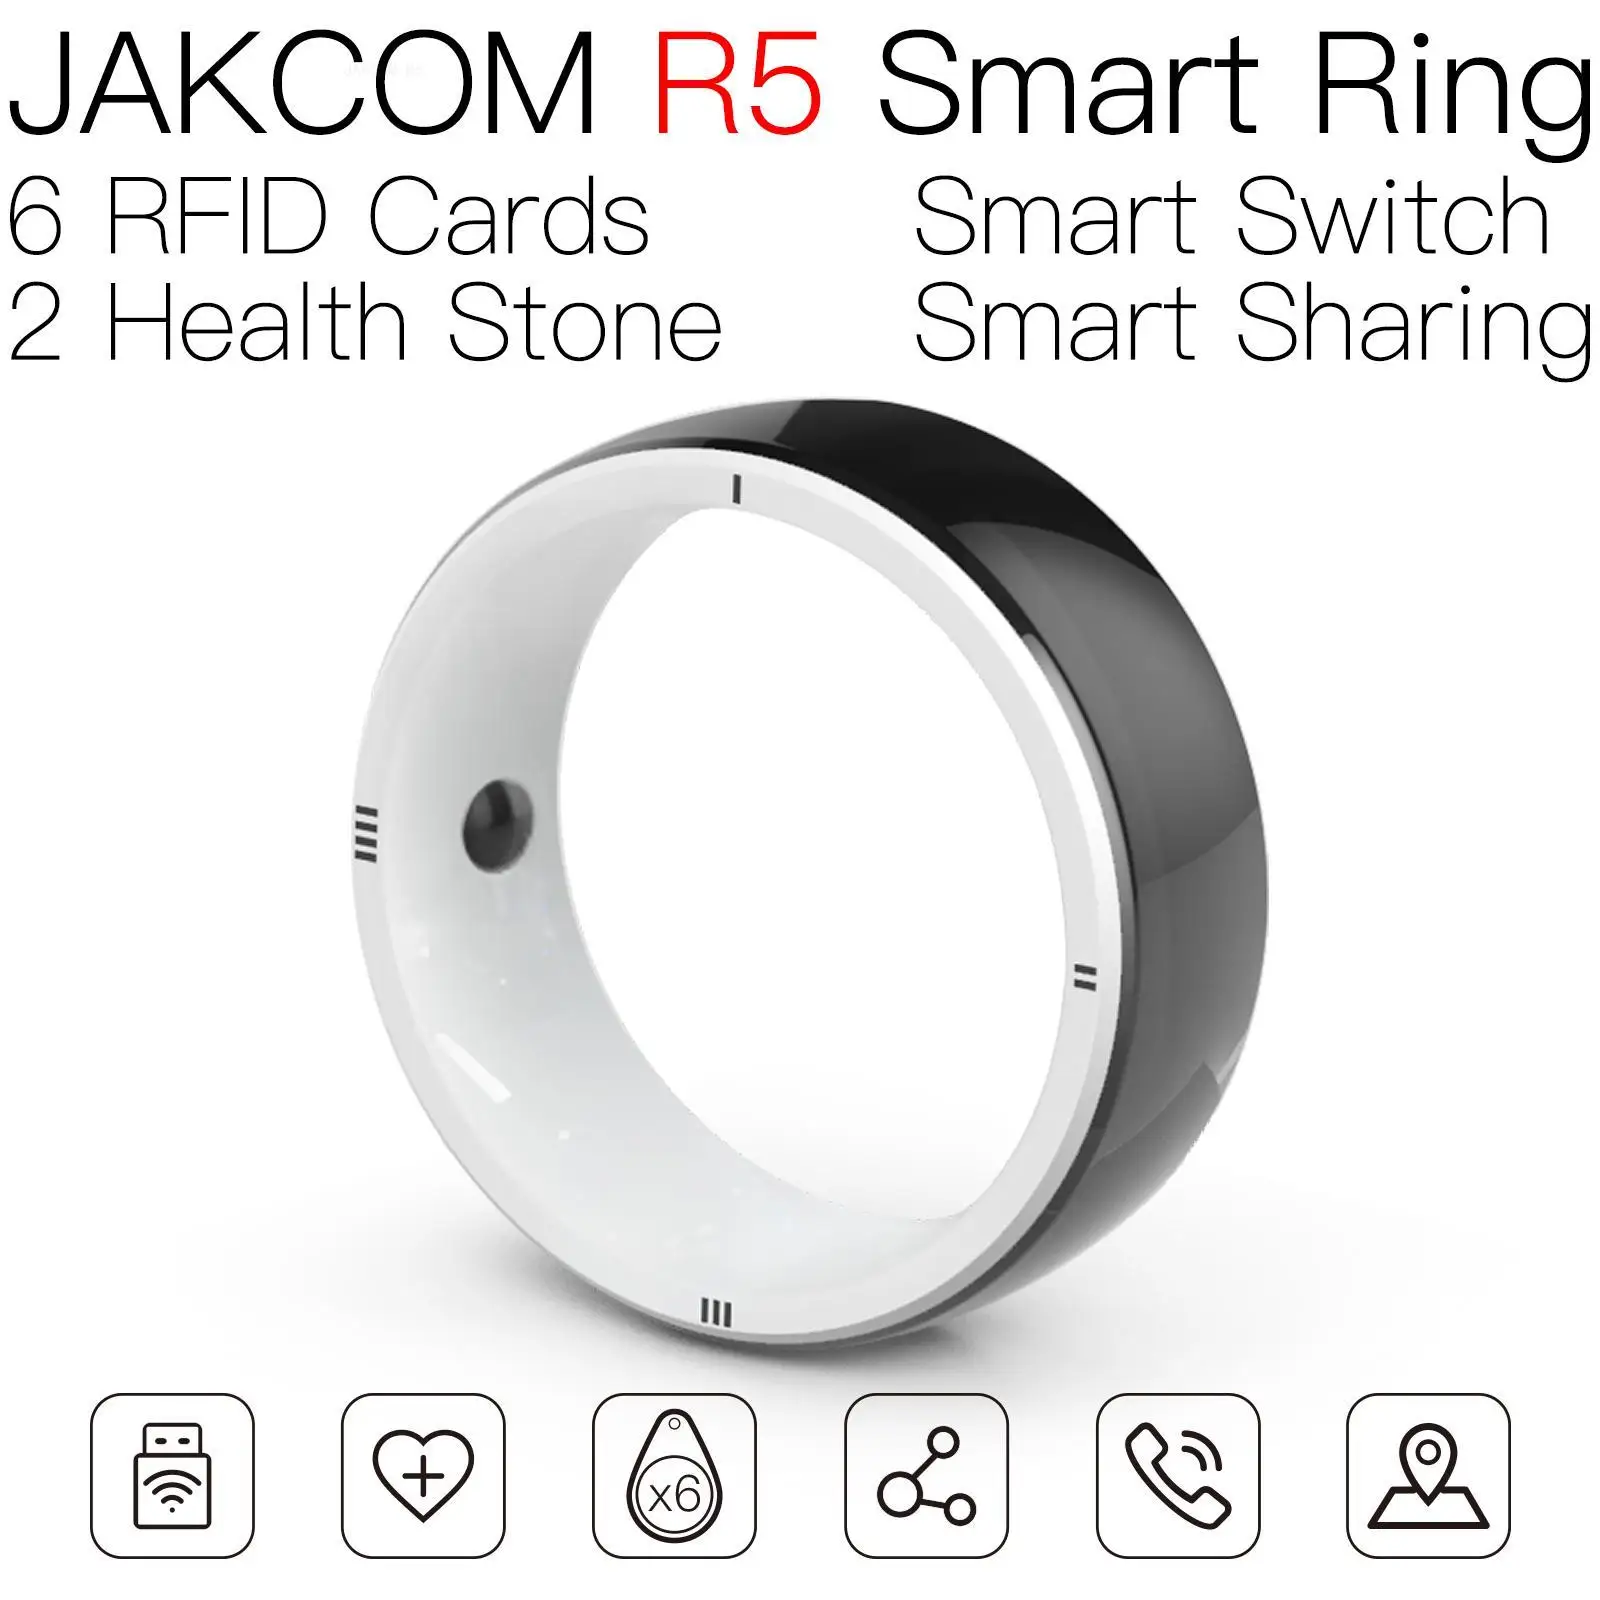 

Умное кольцо JAKCOM R5, лучше, чем мужские часы 2020, роскошный m4 v60, смарт-браслет 6 дюймов, Официальный магазин